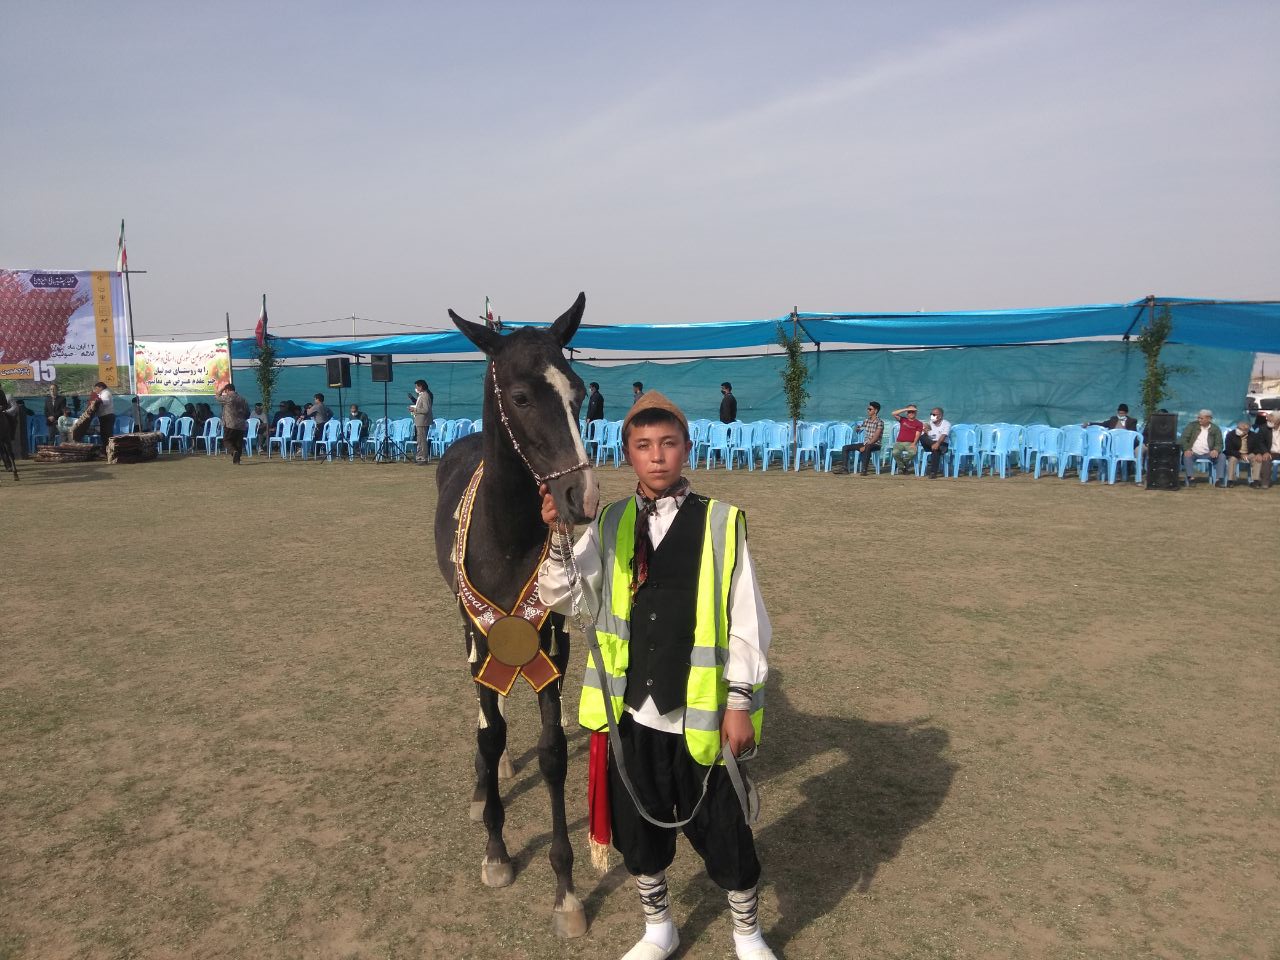 پانزدهیمن جشنواره ملی زیبایی اسب اصیل ترکمن در گلستان